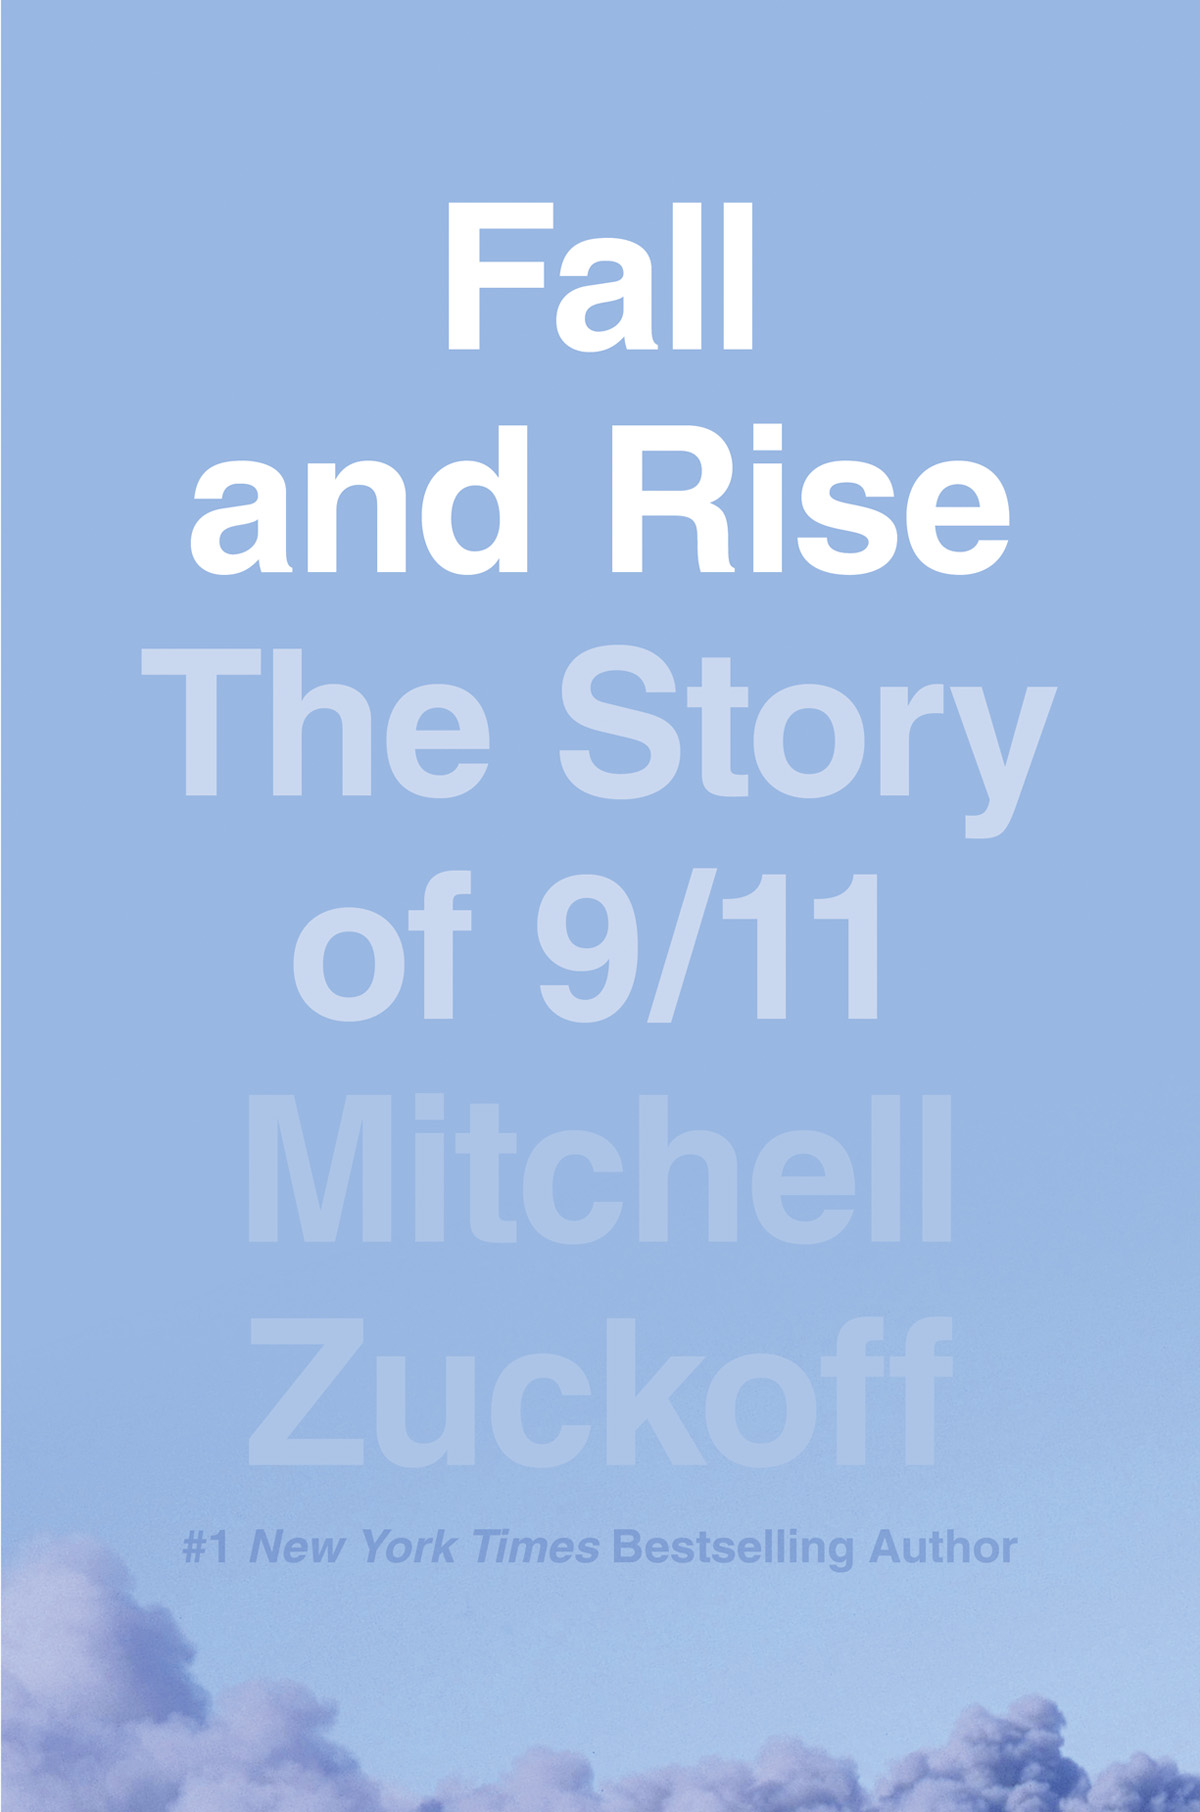 Книга Fall and Rise: The Story of 9/11 из серии , созданная MItchell Zuckoff, может относится к жанру Историческая литература, Политика, политология, Секс и семейная психология. Стоимость электронной книги Fall and Rise: The Story of 9/11 с идентификатором 48652022 составляет 2102.33 руб.